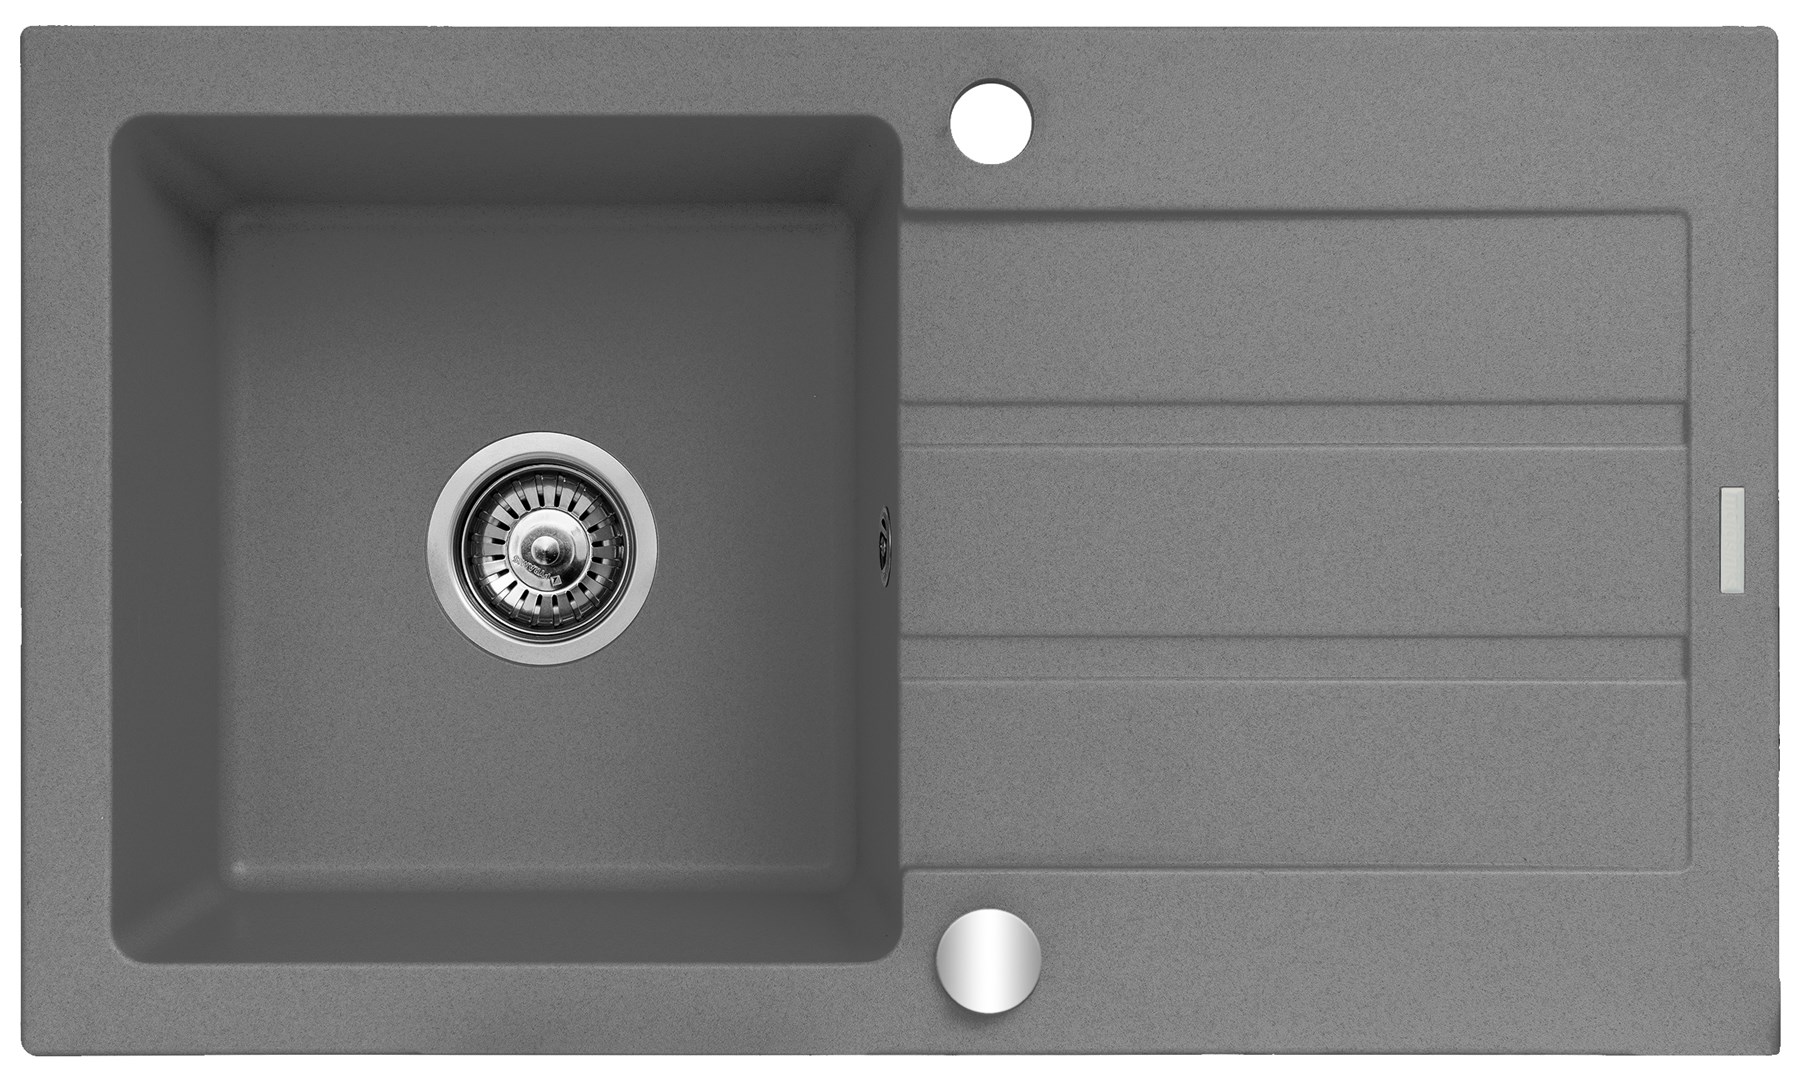 Jednoplášťový dřez s odkapávačem Maidsinks Promo 76x44 1B 1D E070053701